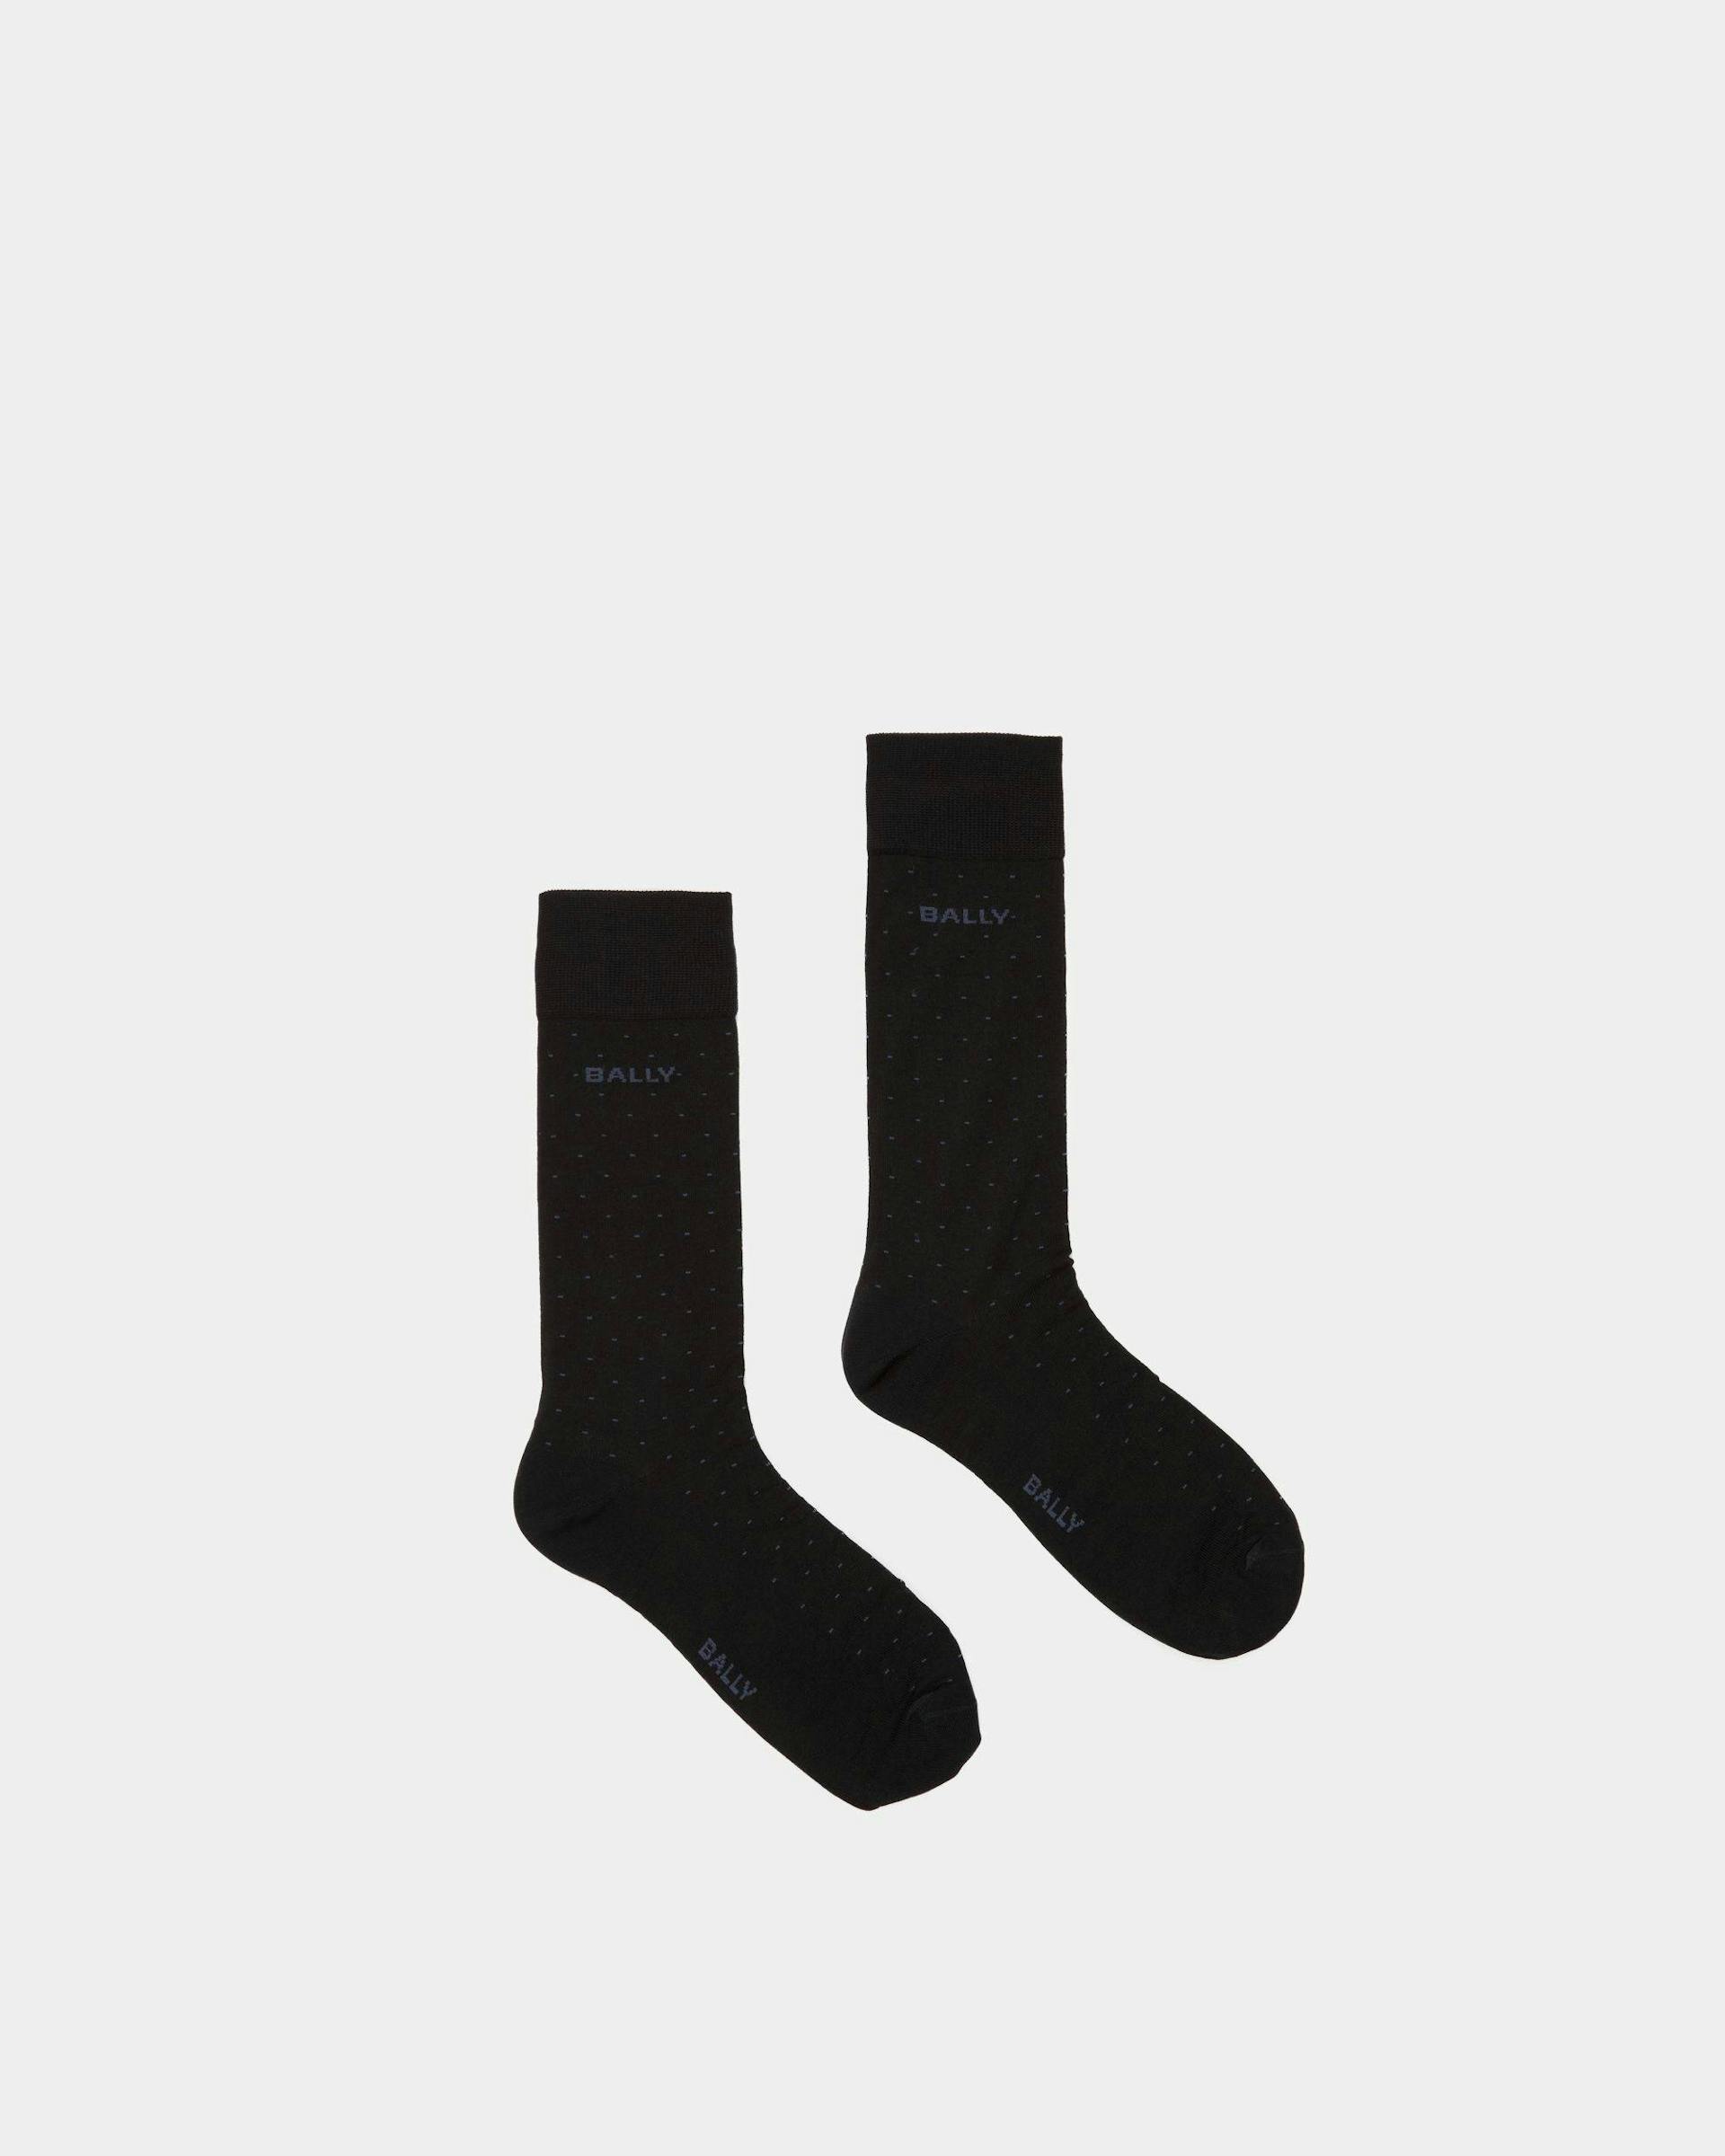 Chaussettes avec logo En coton mélangé couleur encre - Homme - Bally - 01